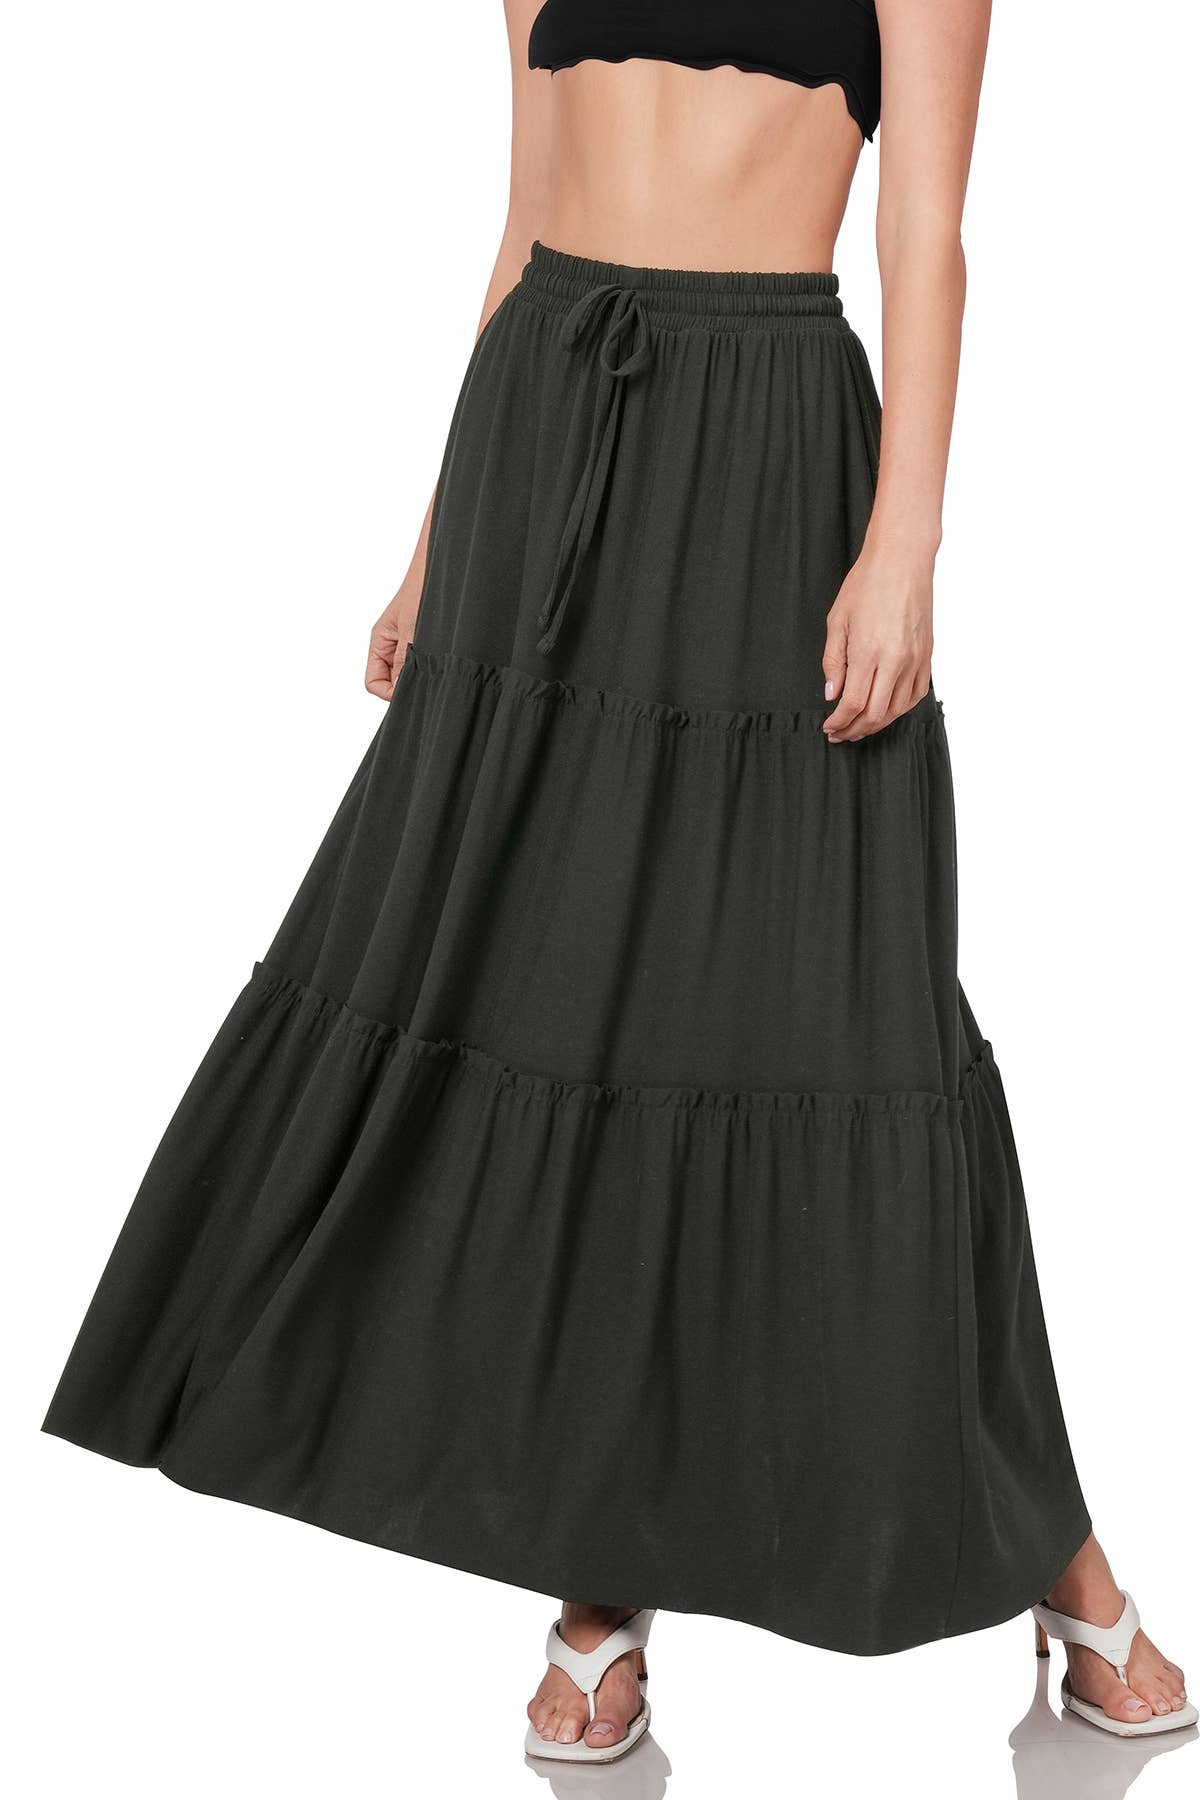 Zenana Drawstring Waist Ruffle Skirt in Black